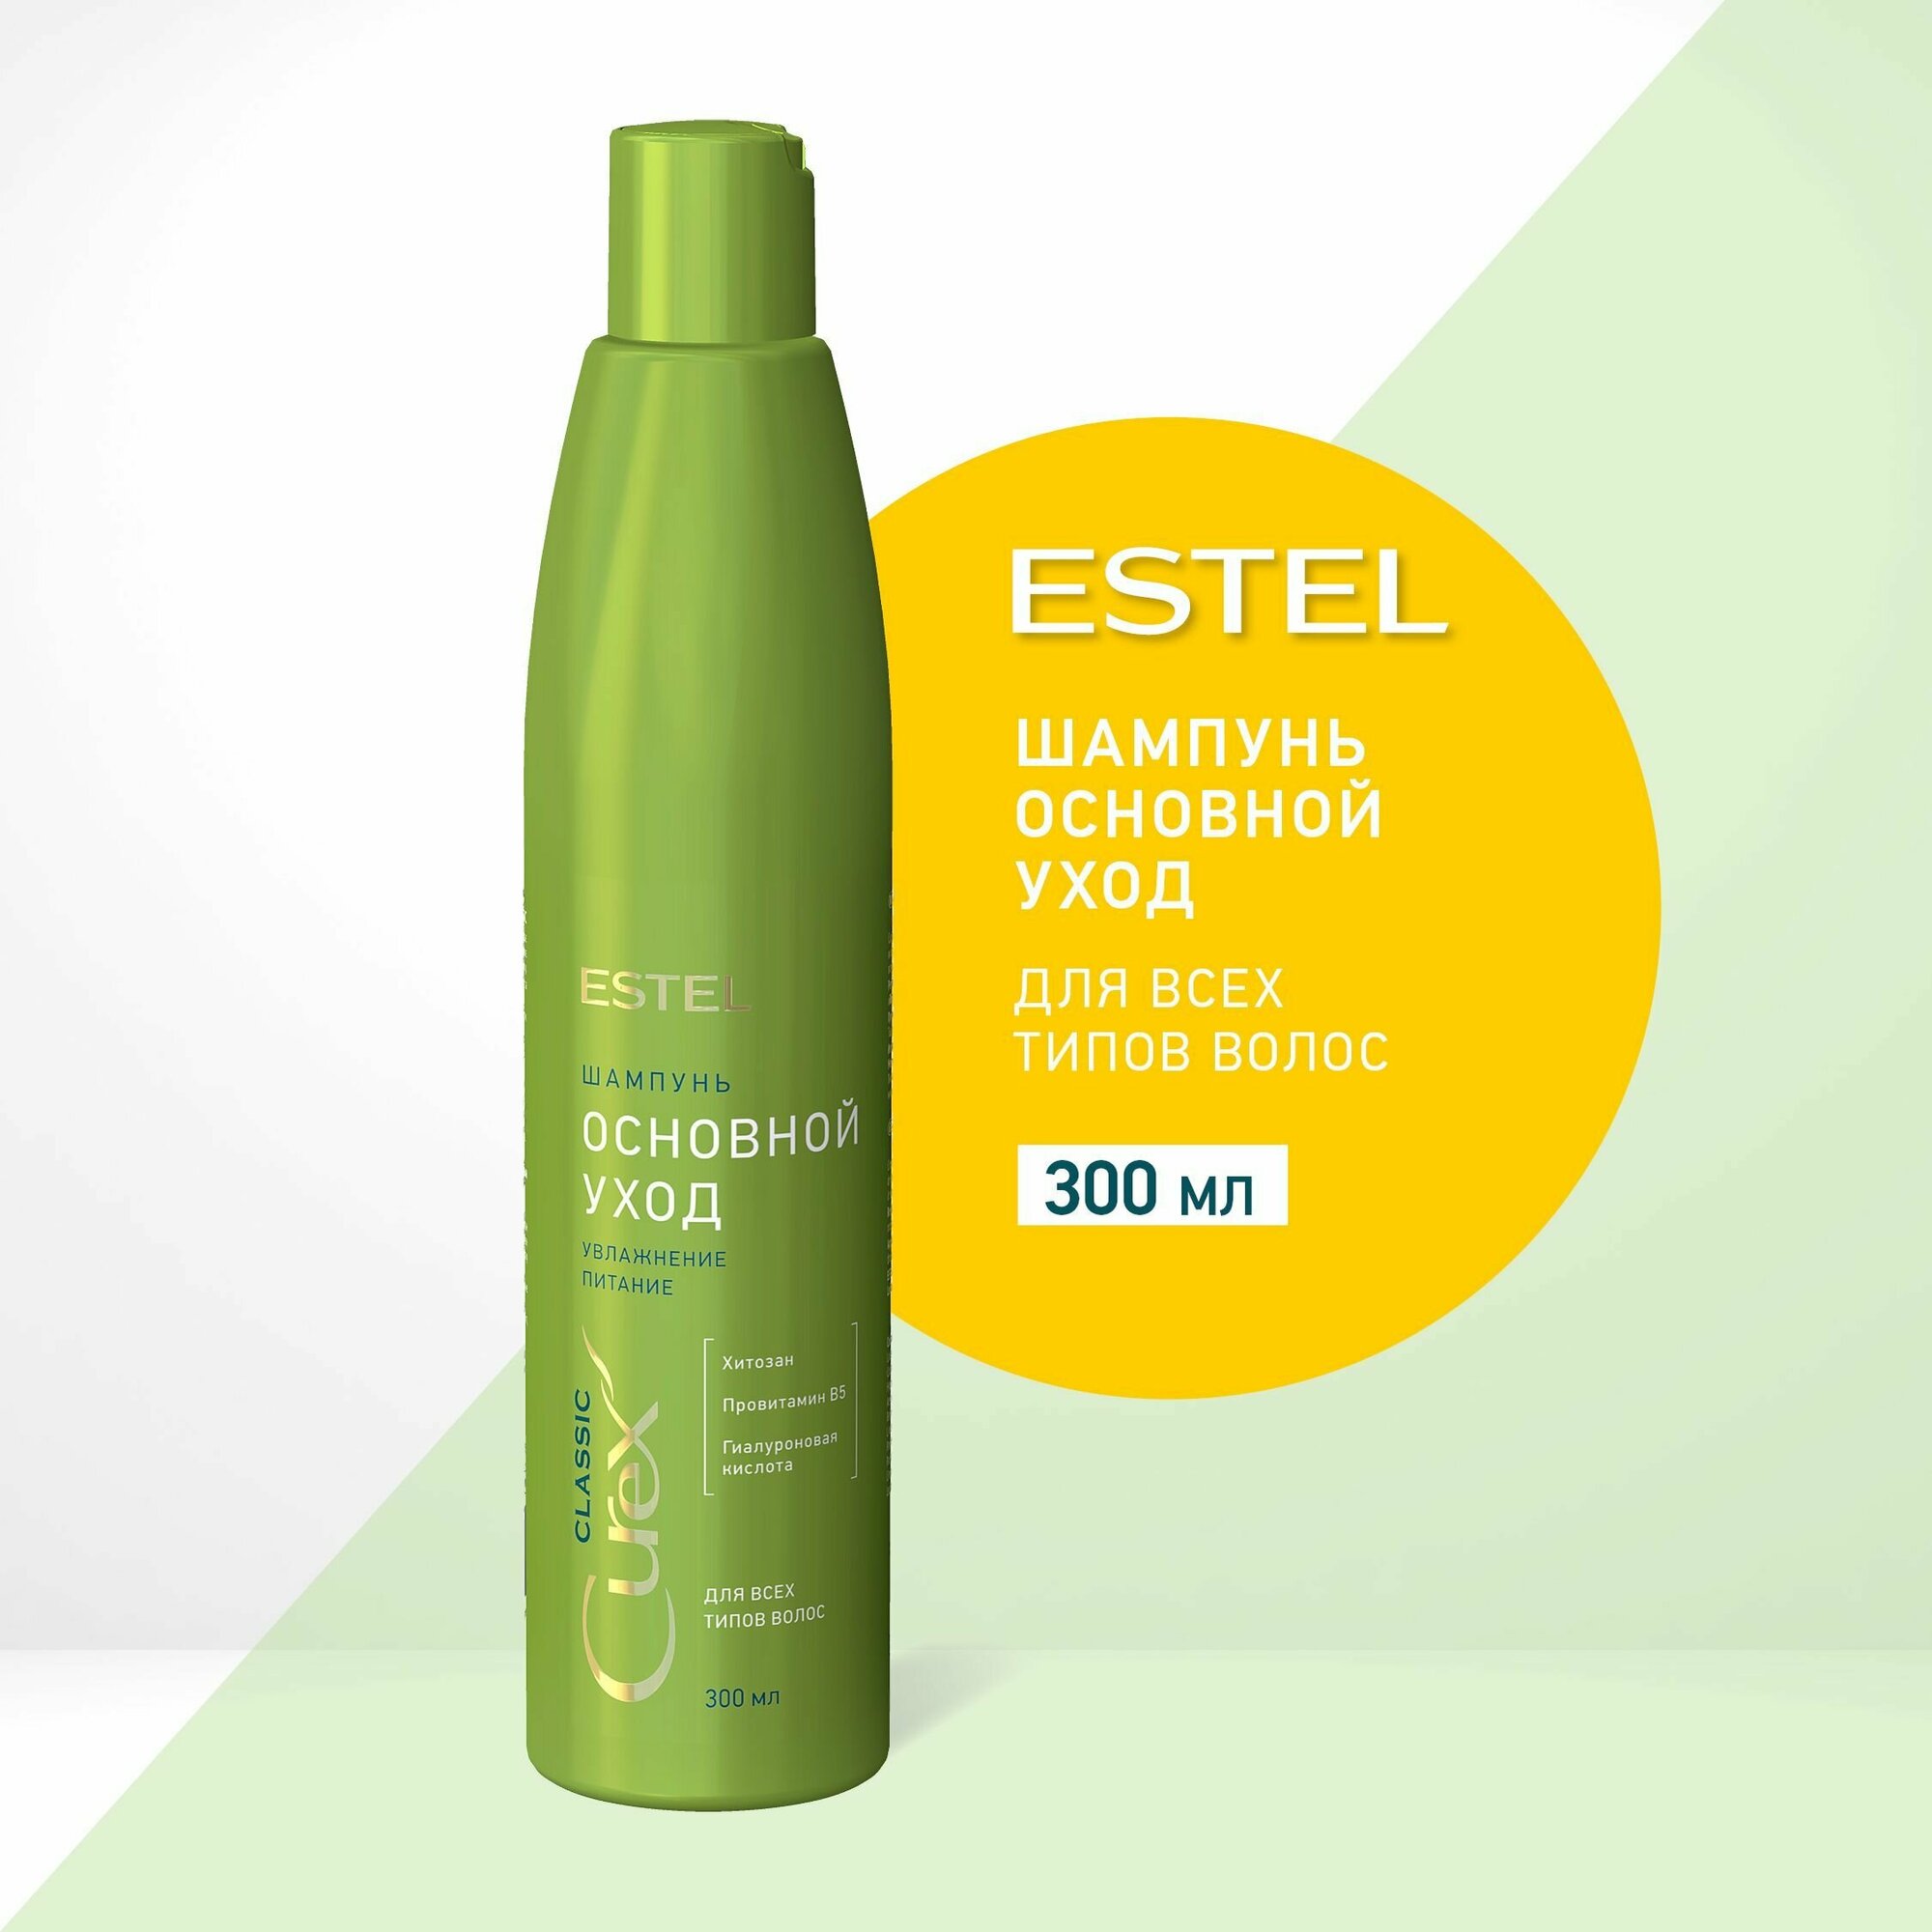 ESTEL Curex CLASSIC, Шампунь для волос женский профессиональный для всех типов волос, 300 мл